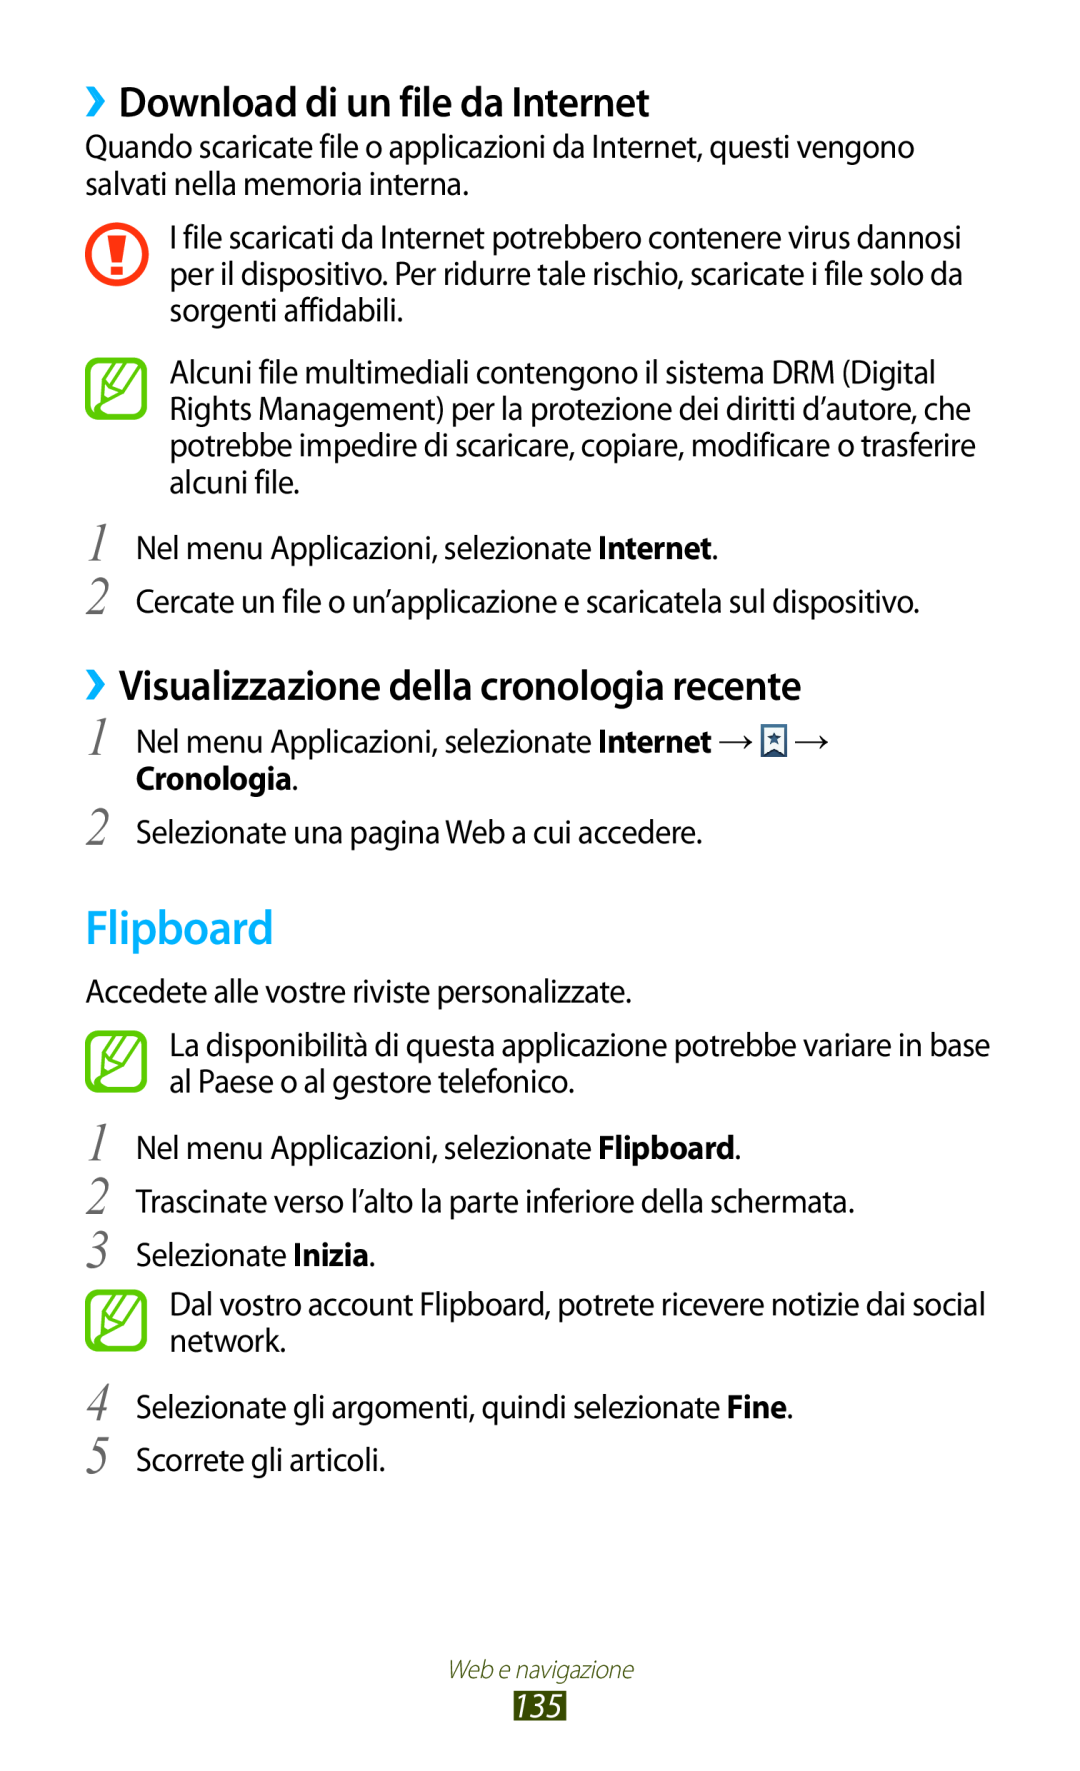 Samsung GT-N7000ZBAOMN manual Flipboard, ››Download di un file da Internet, ››Visualizzazione della cronologia recente 